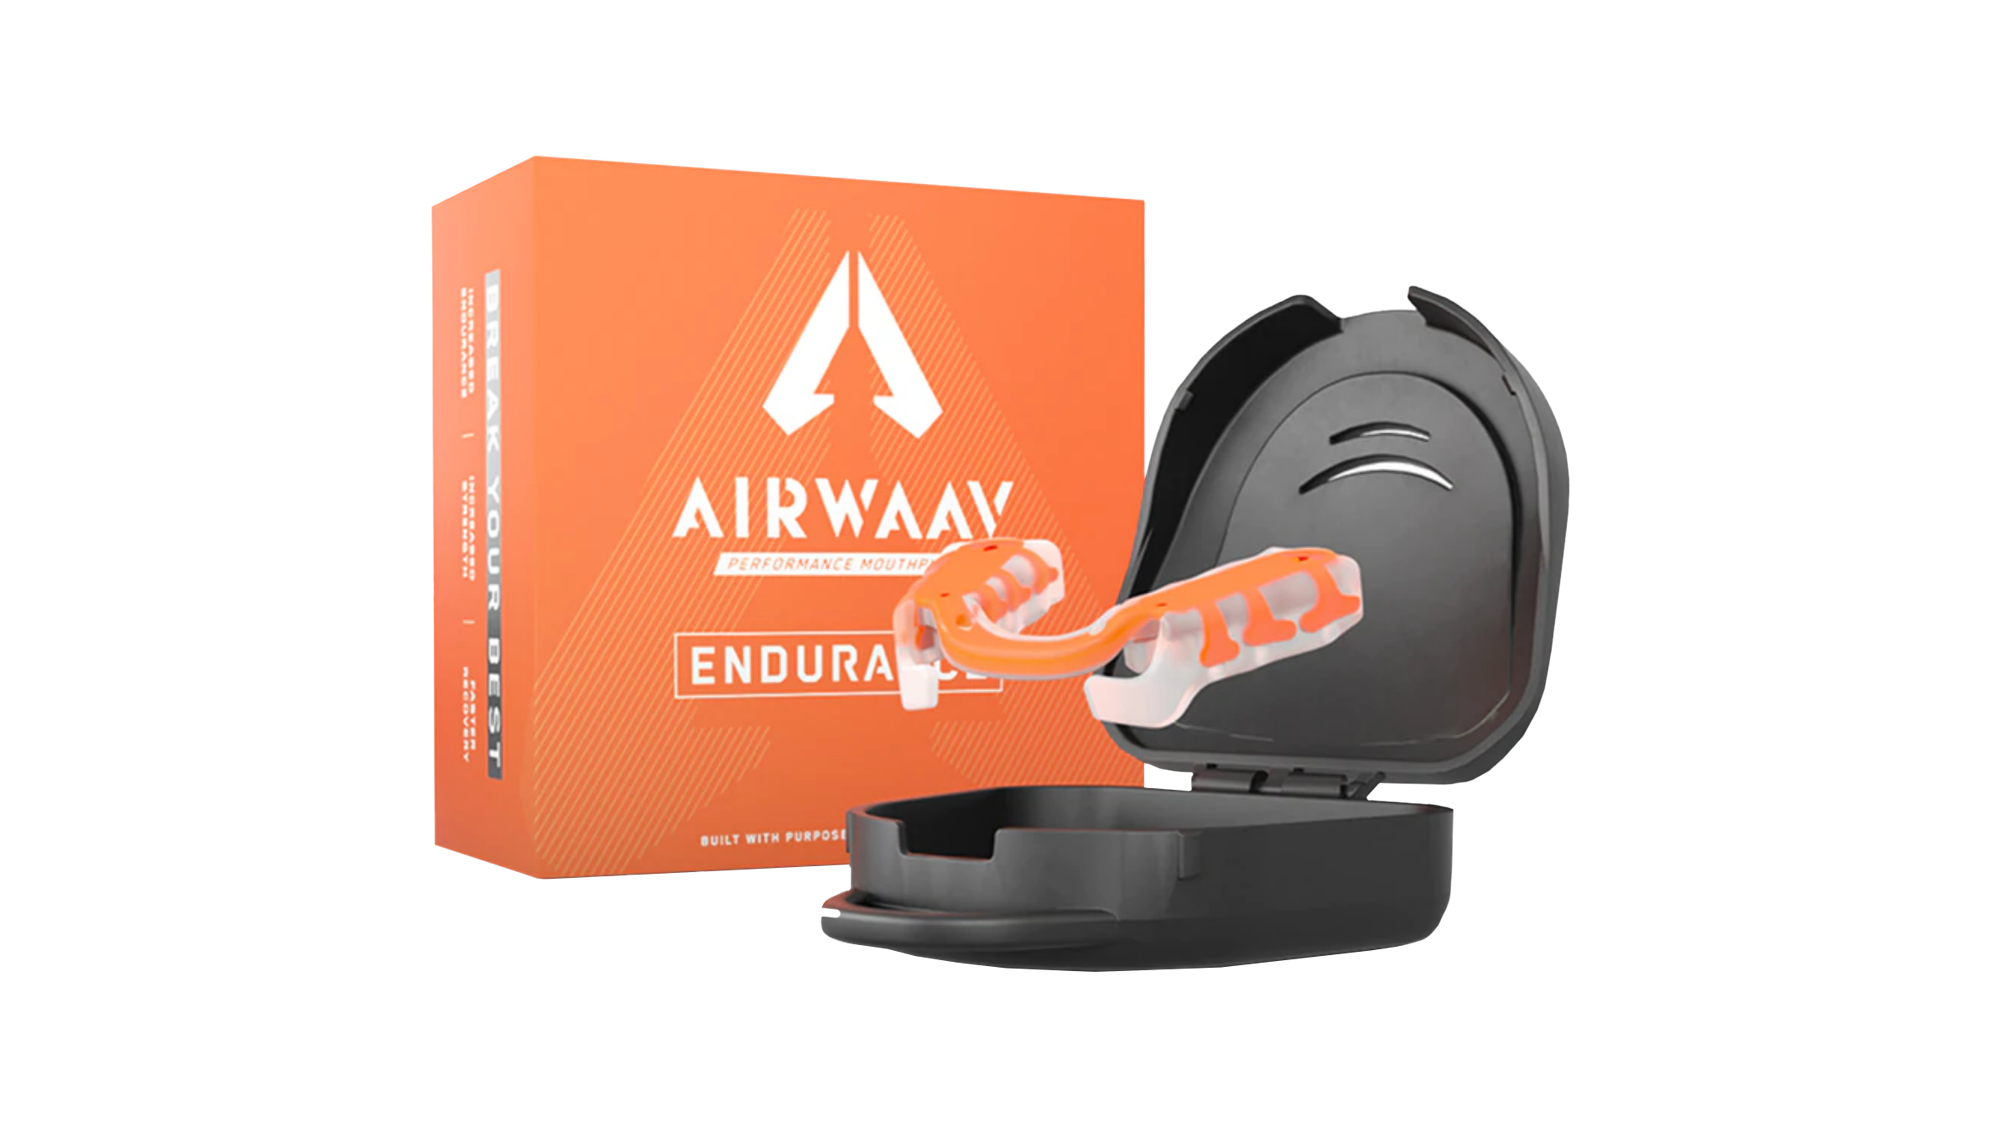 Airwaav Endurance Mouthpiece (2 Pack)